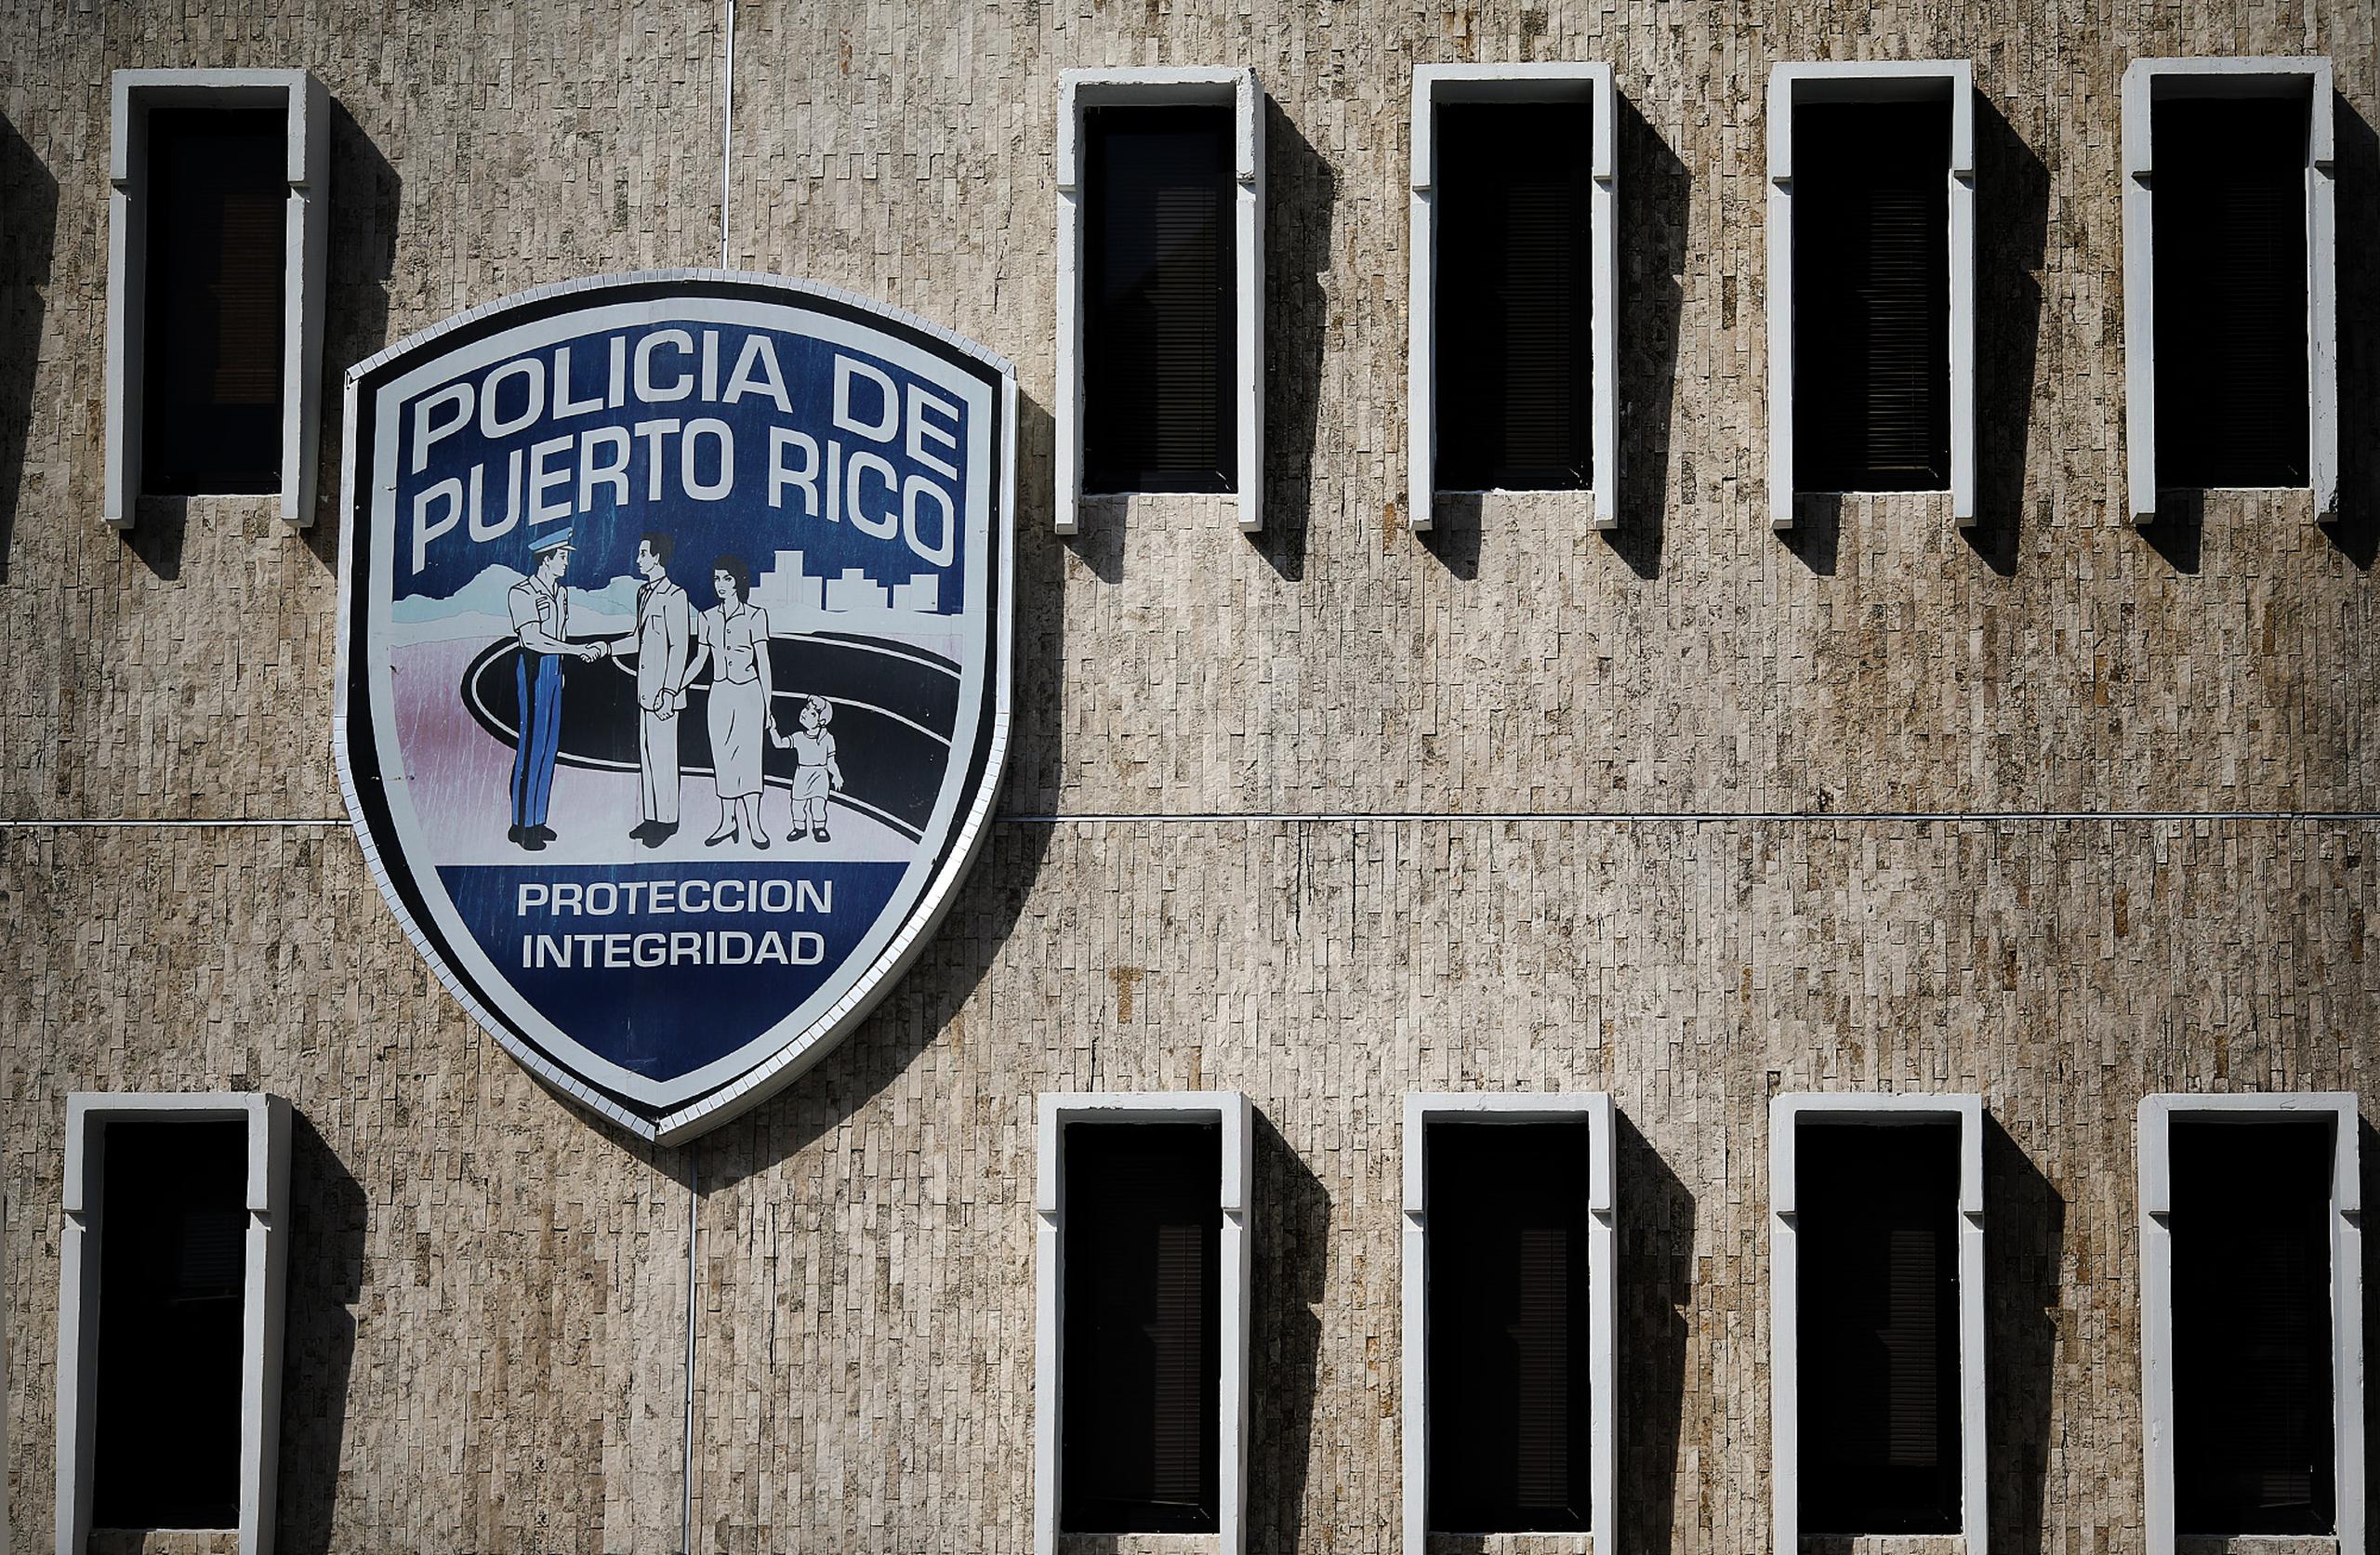 Agentes adscritos a la División de Propiedad del Cuerpo de Investigaciones Criminales del área de Caguas investigan.